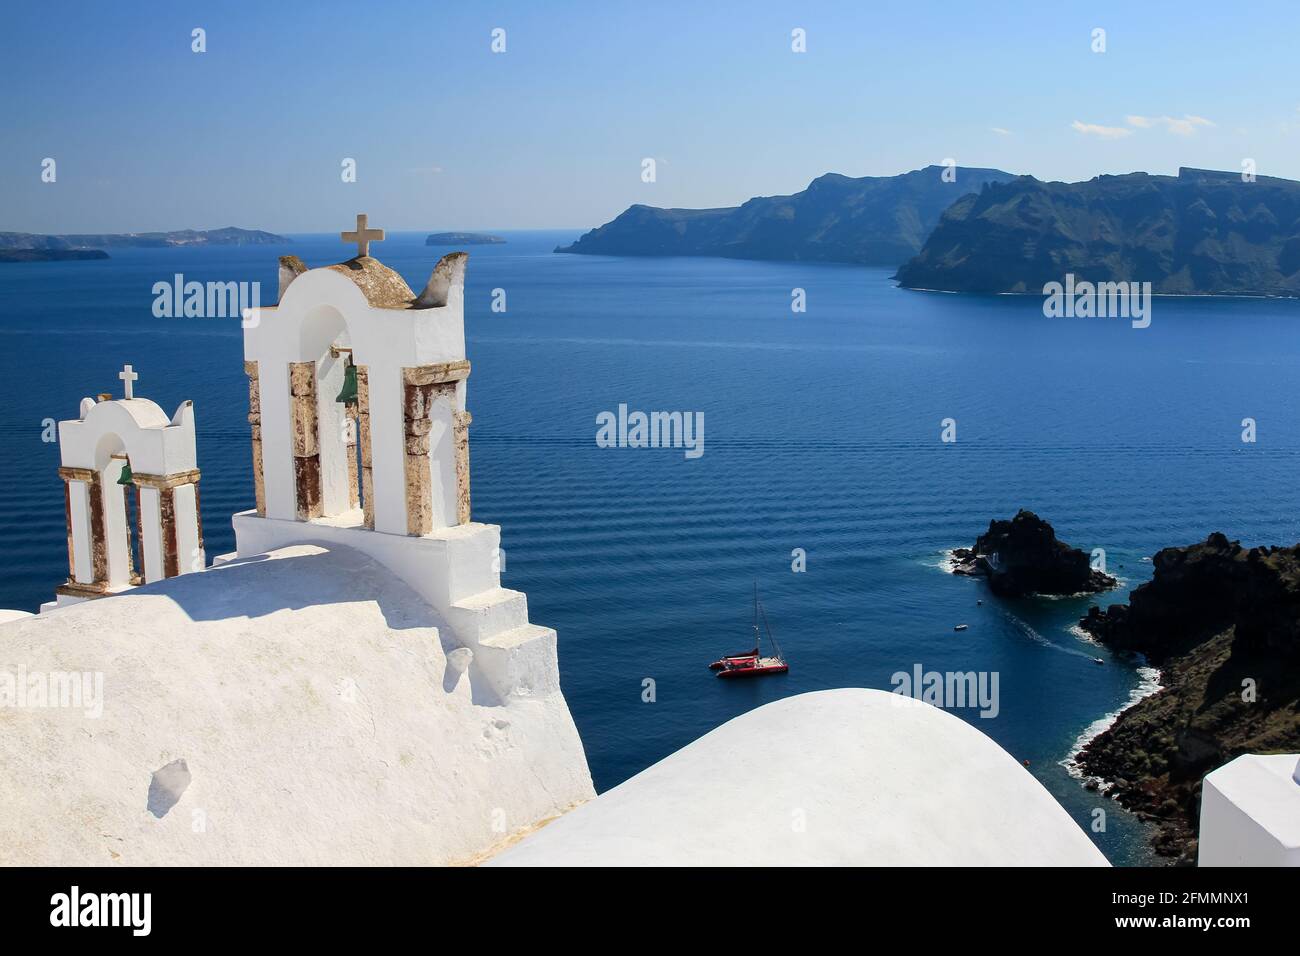 Campanarios de la iglesia griega tradicional contra el mar azul y el cielo, Oia, Santorini, Grecia Foto de stock